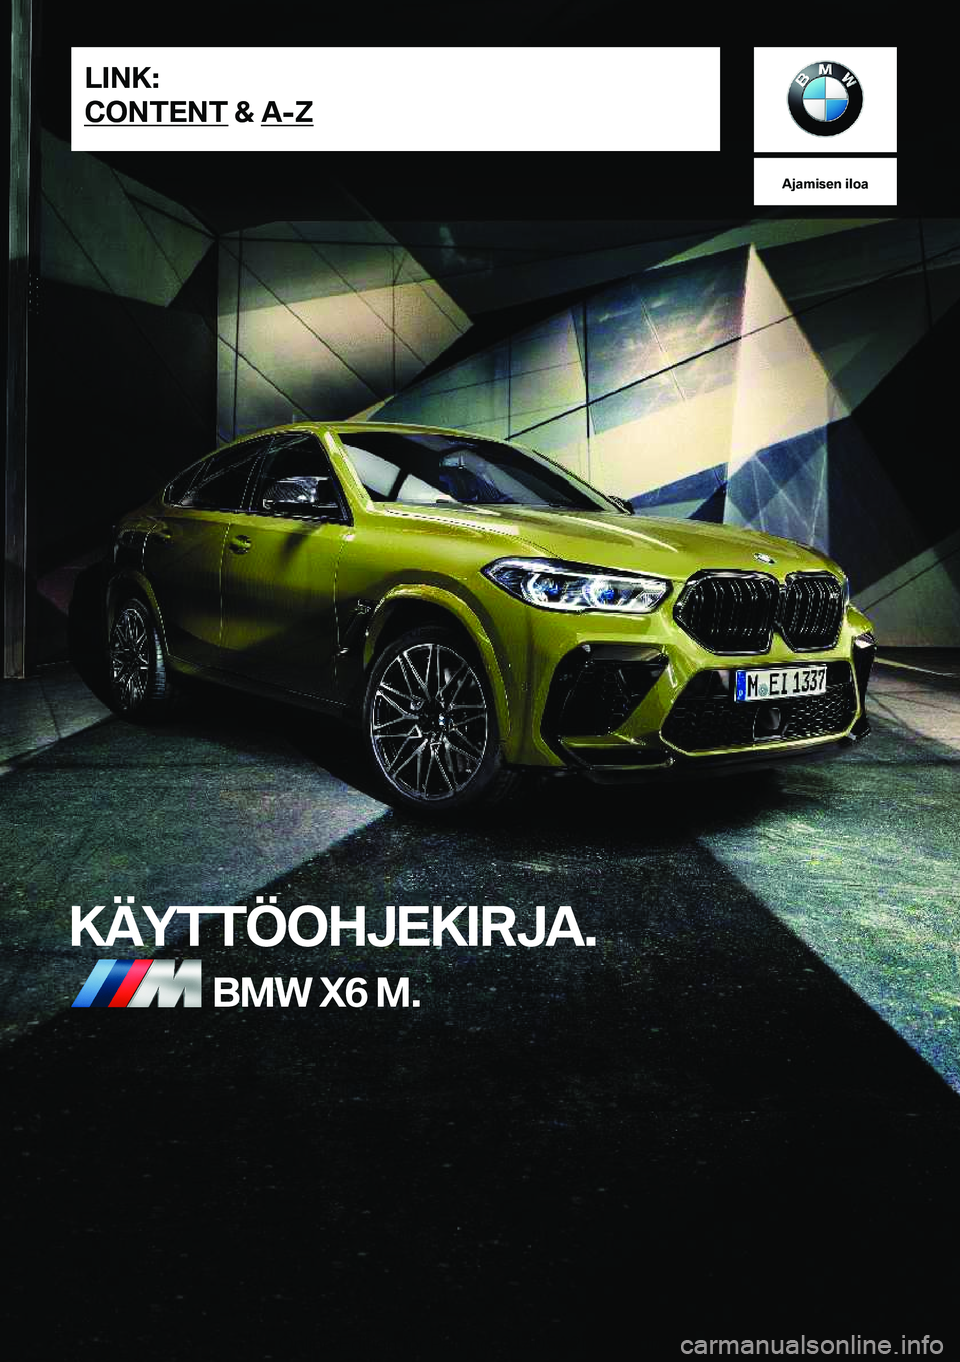 BMW X6 M 2021  Omistajan Käsikirja (in Finnish) �A�j�a�m�i�s�e�n��i�l�o�a
�K�